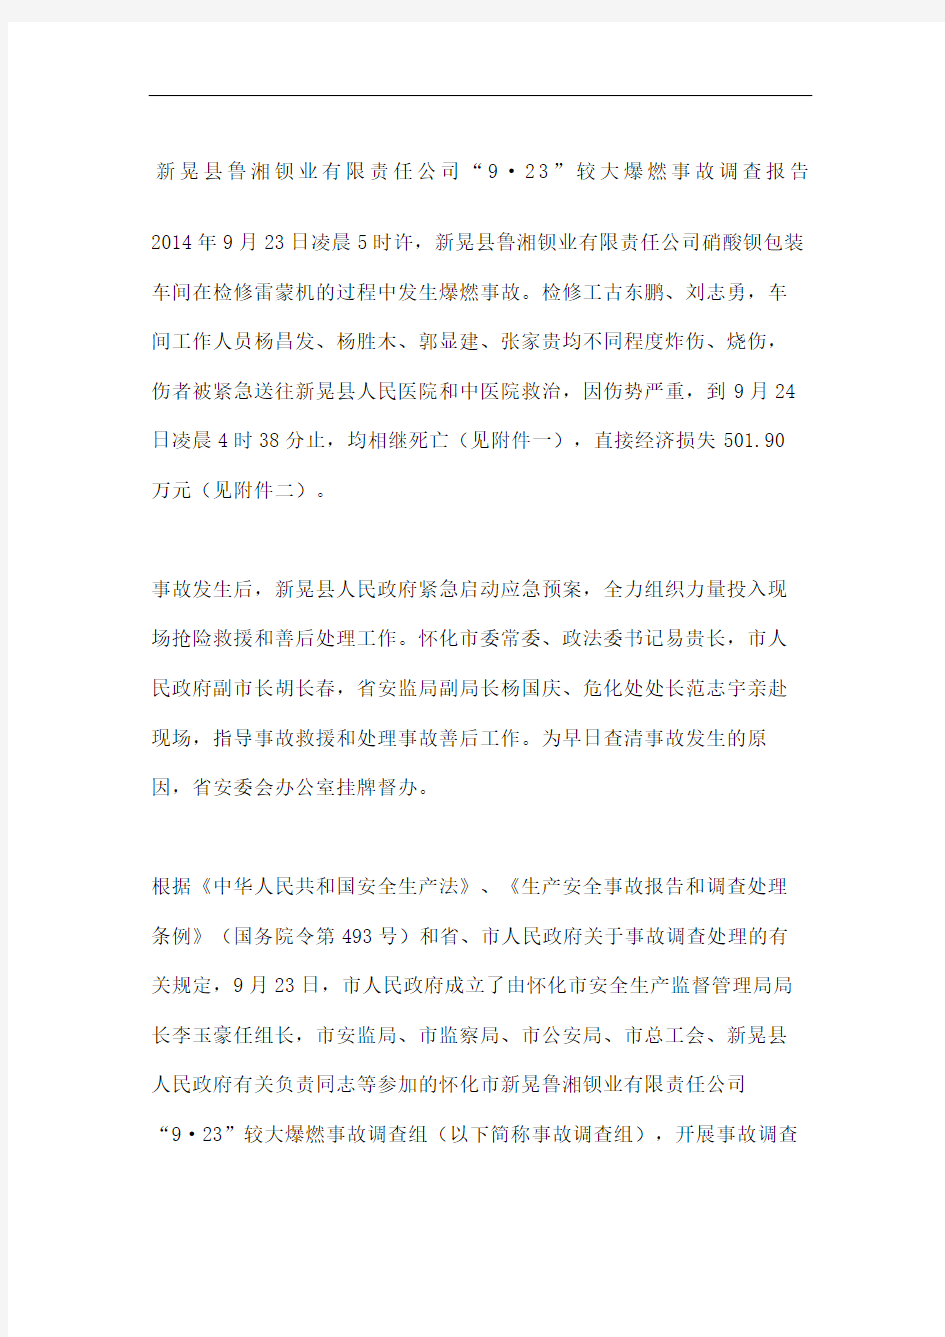 新晃县鲁湘钡业责任公司较大爆燃事故调查报告图文稿